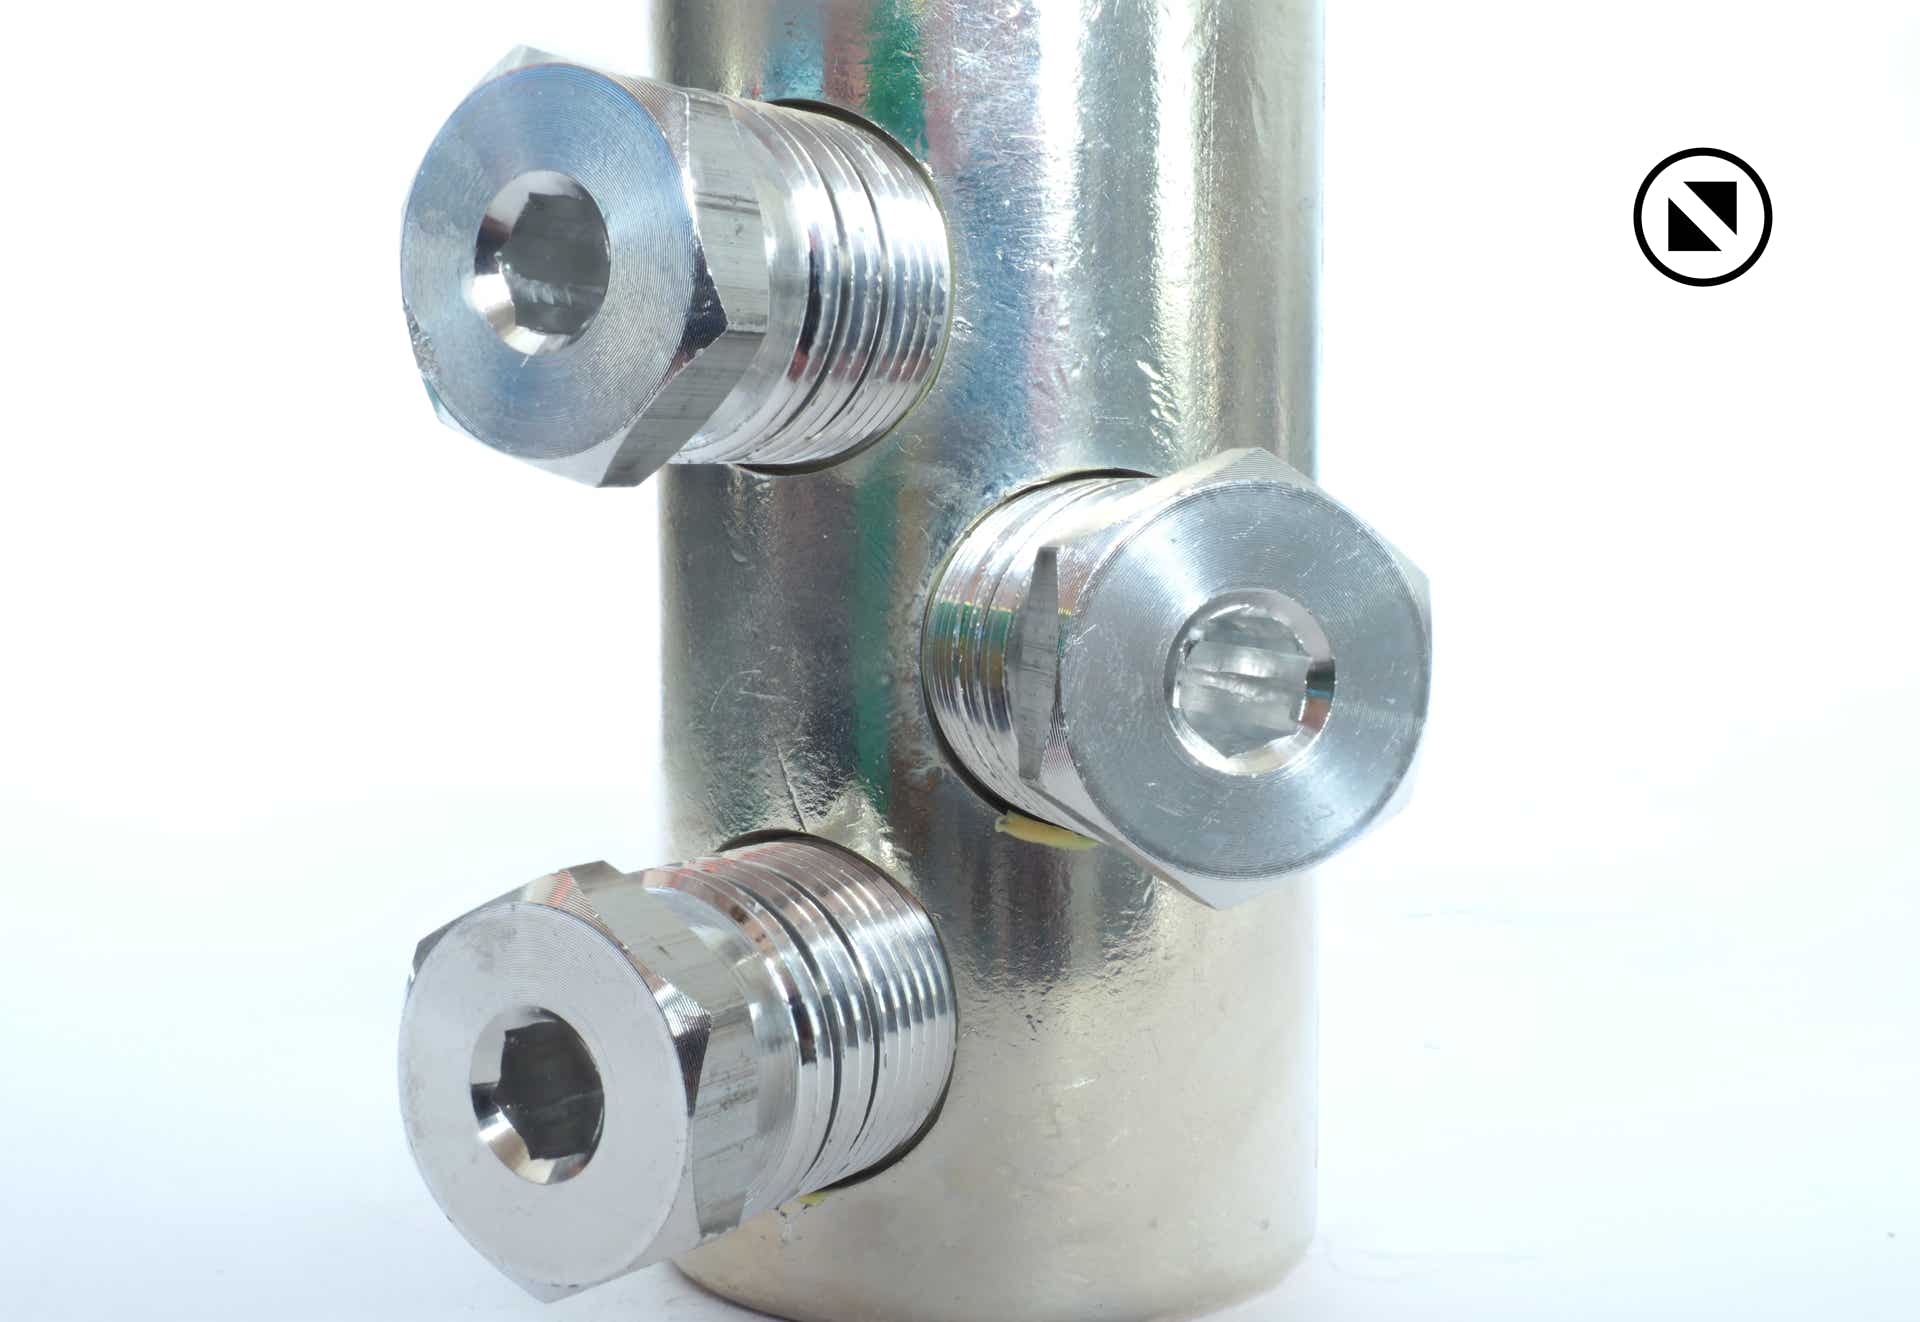 Foto Verbindungsmuffe Aluminium mit drei Aluminium Schraubenmuttern senkrecht auf weissem Untergrund stehend